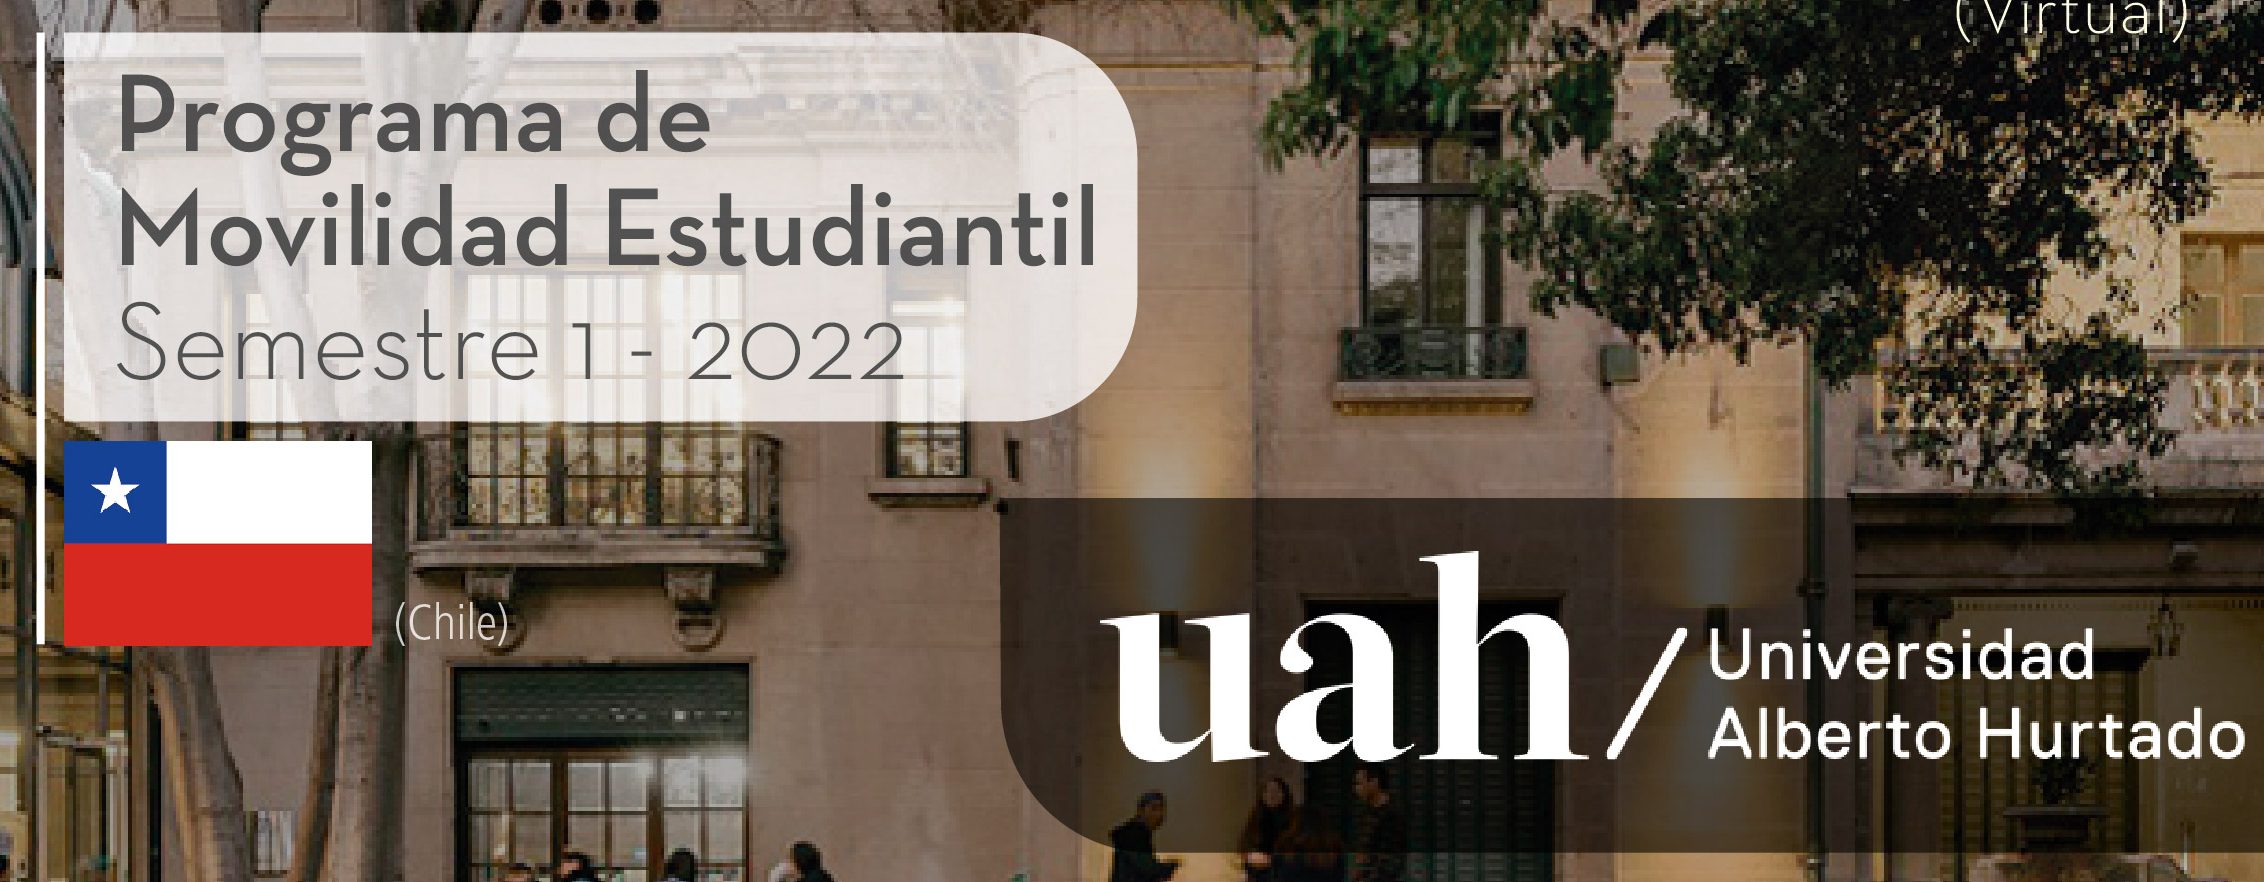 La Universidad Alberto Hurtado de Chile es parte del Programa de Movilidad Virtual Estudiantil UCB por el Mundo.